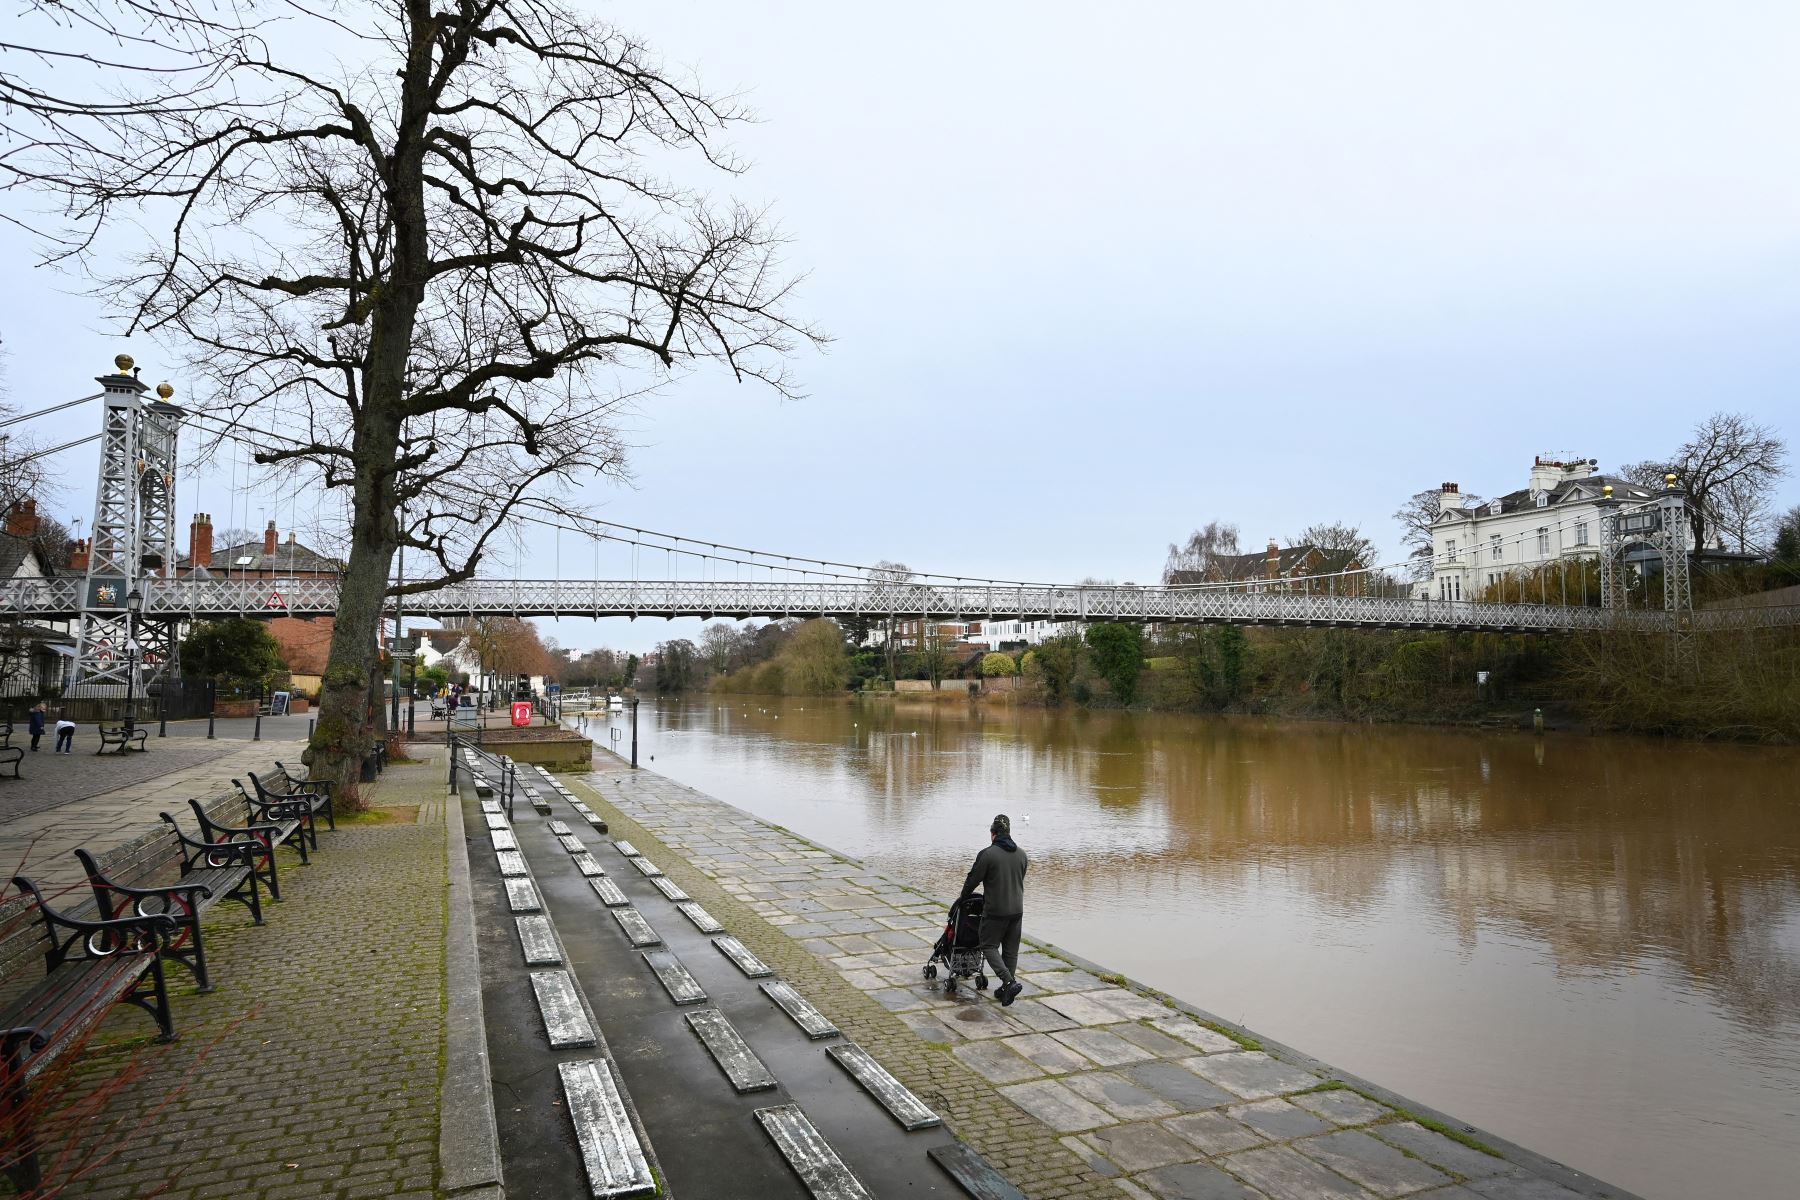 La gente se ejercita en las orillas del río Dee en Chester, noroeste de Inglaterra, el 21 de febrero de 2021 mientras la vida continúa en el tercer bloqueo del coronavirus en Gran Bretaña. Foto: AFP